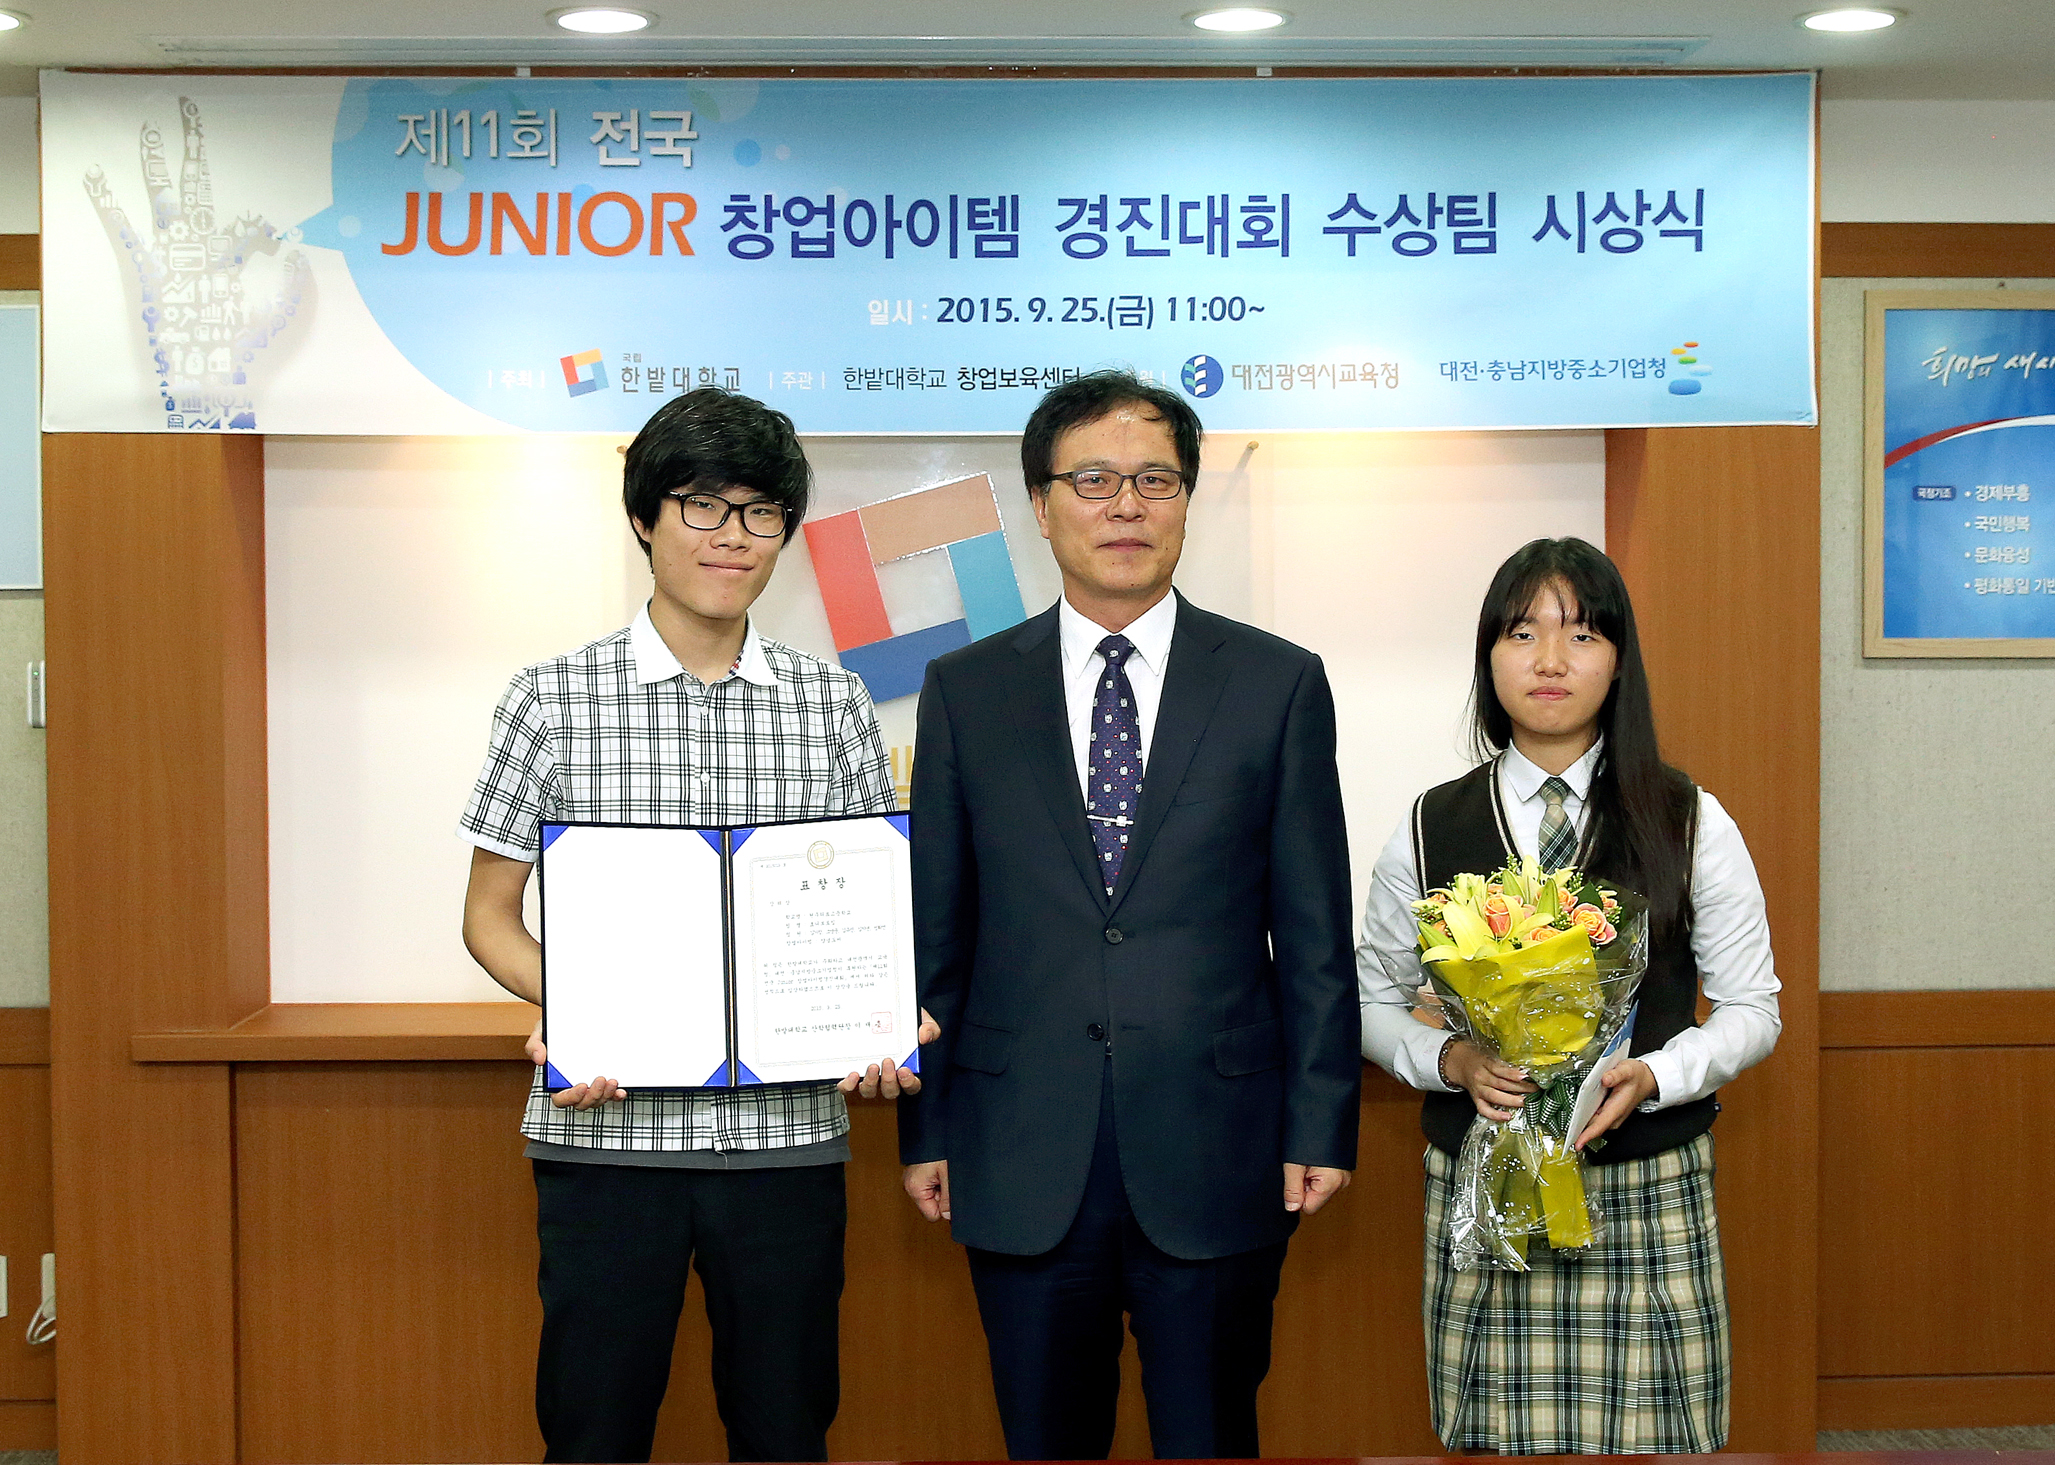 제11회 전국 Junior 경진대회 시상식1번사진